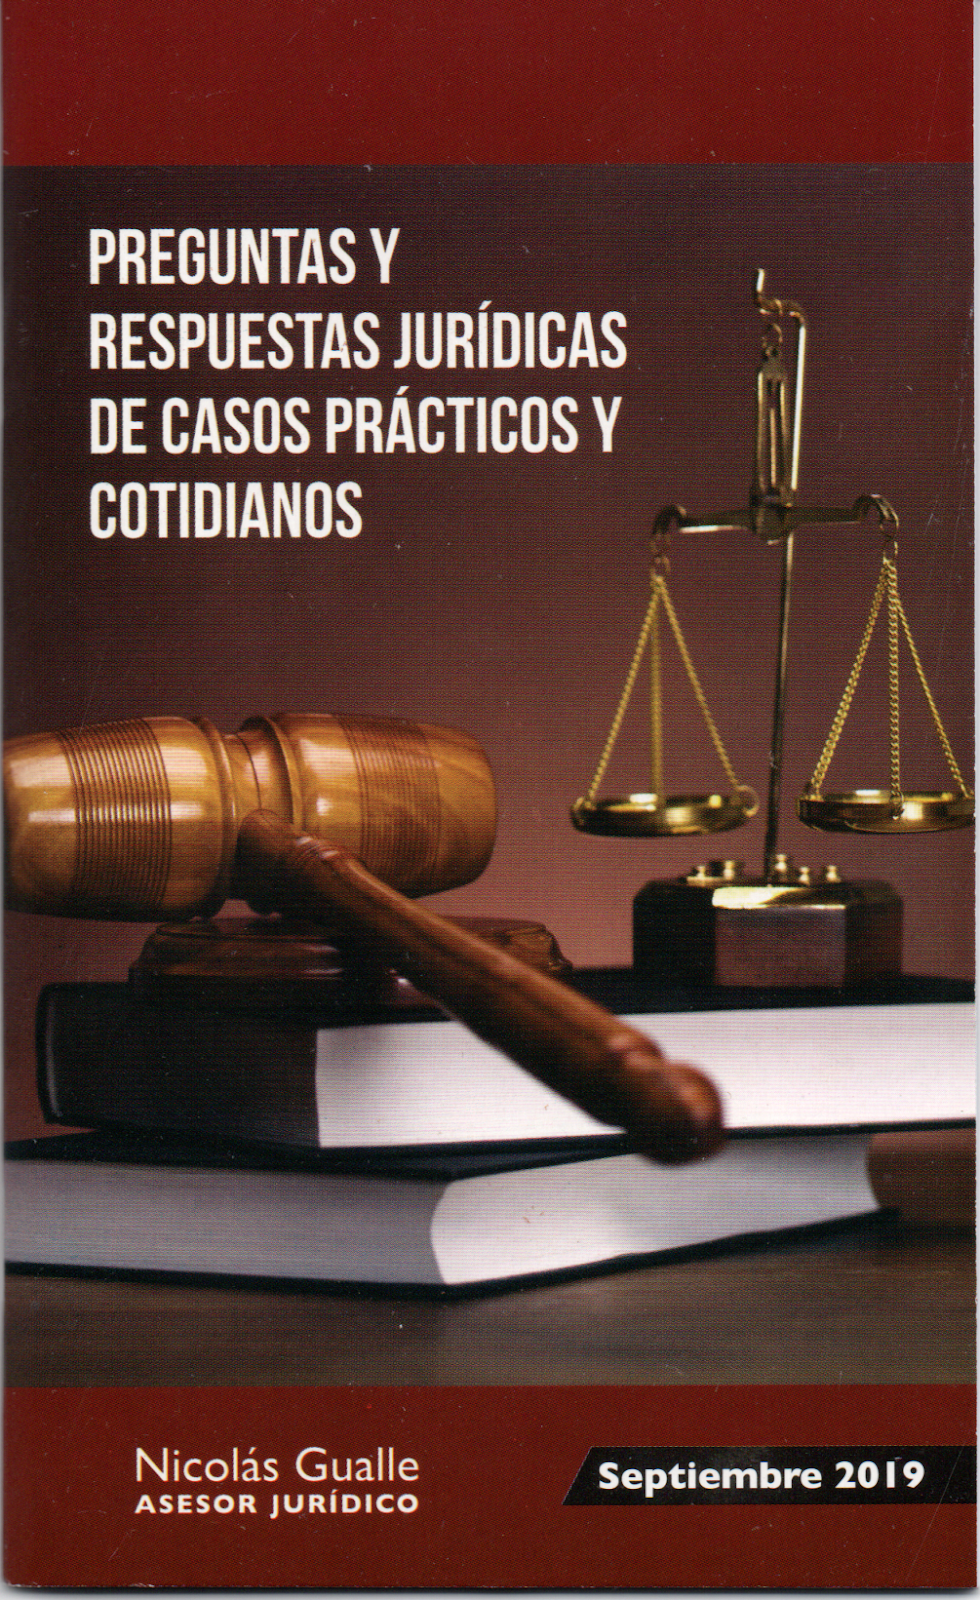 Preguntas y Respuestas Jurídicas, Abg. Nicolás Gualle